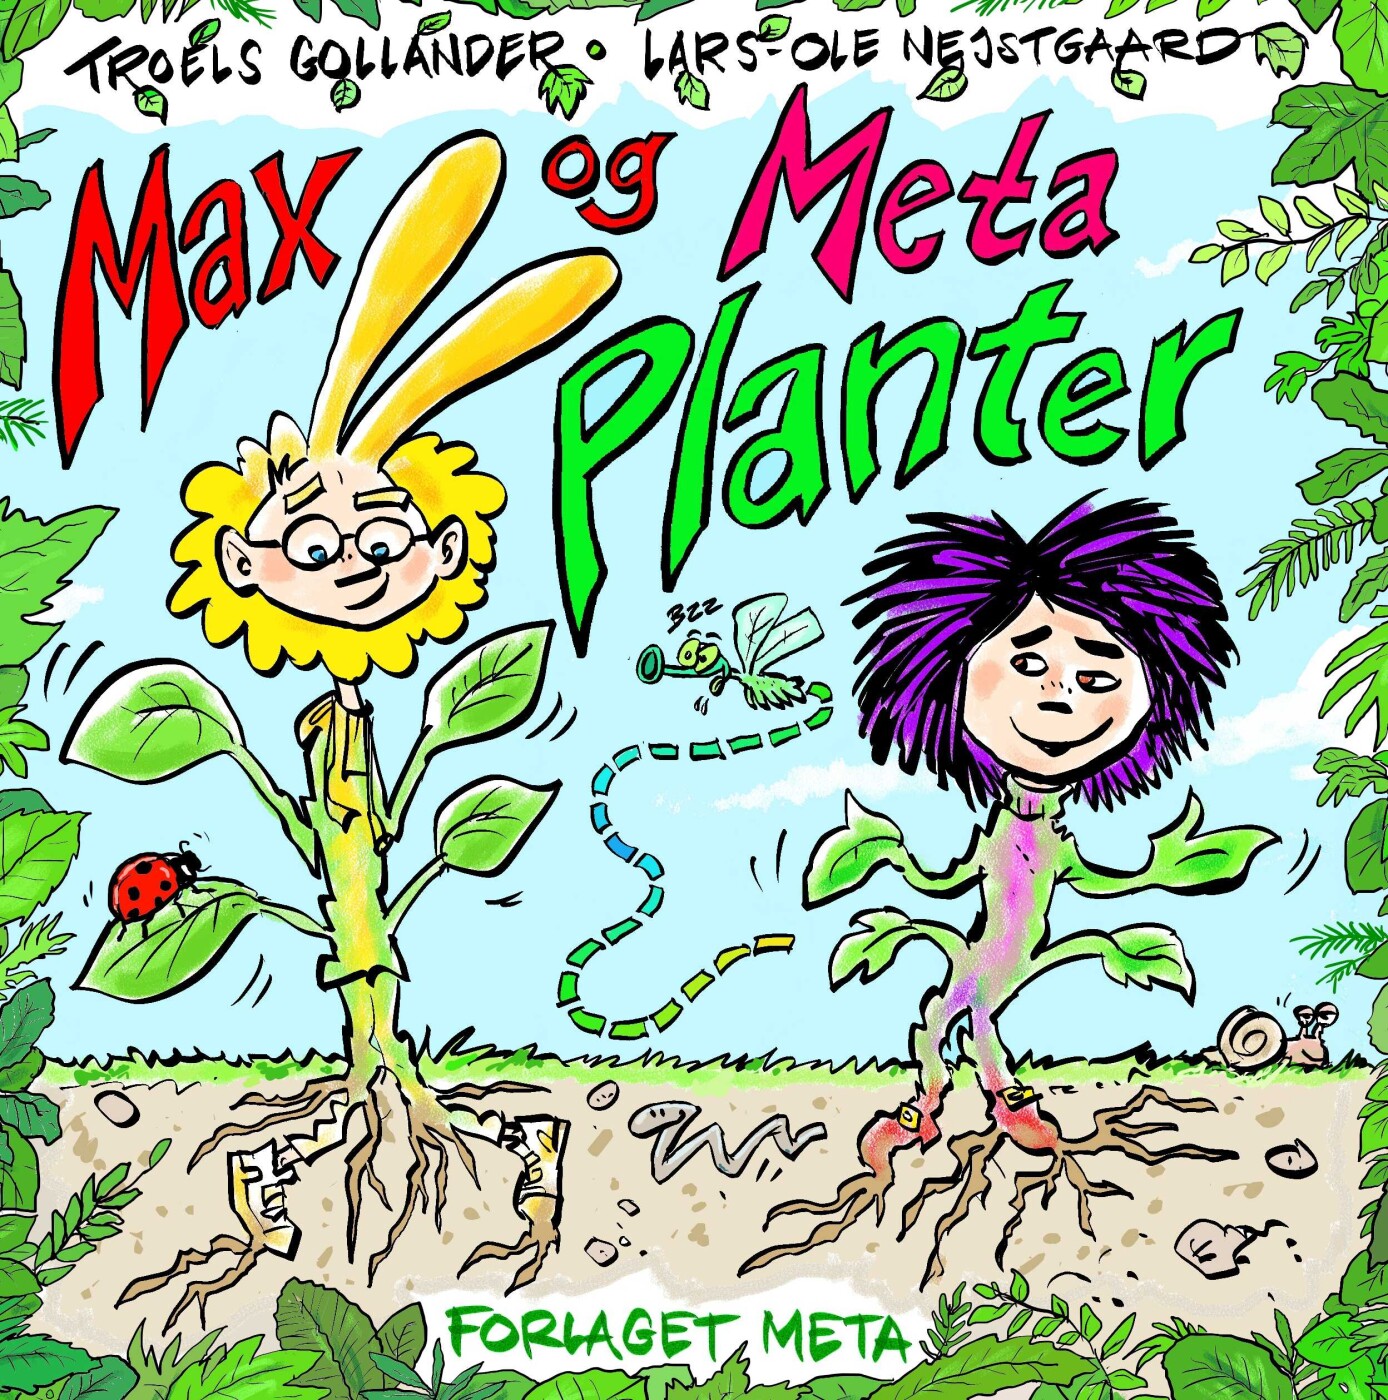 Max Og Meta - Planter - Lars-ole Nejstgaard - Bog